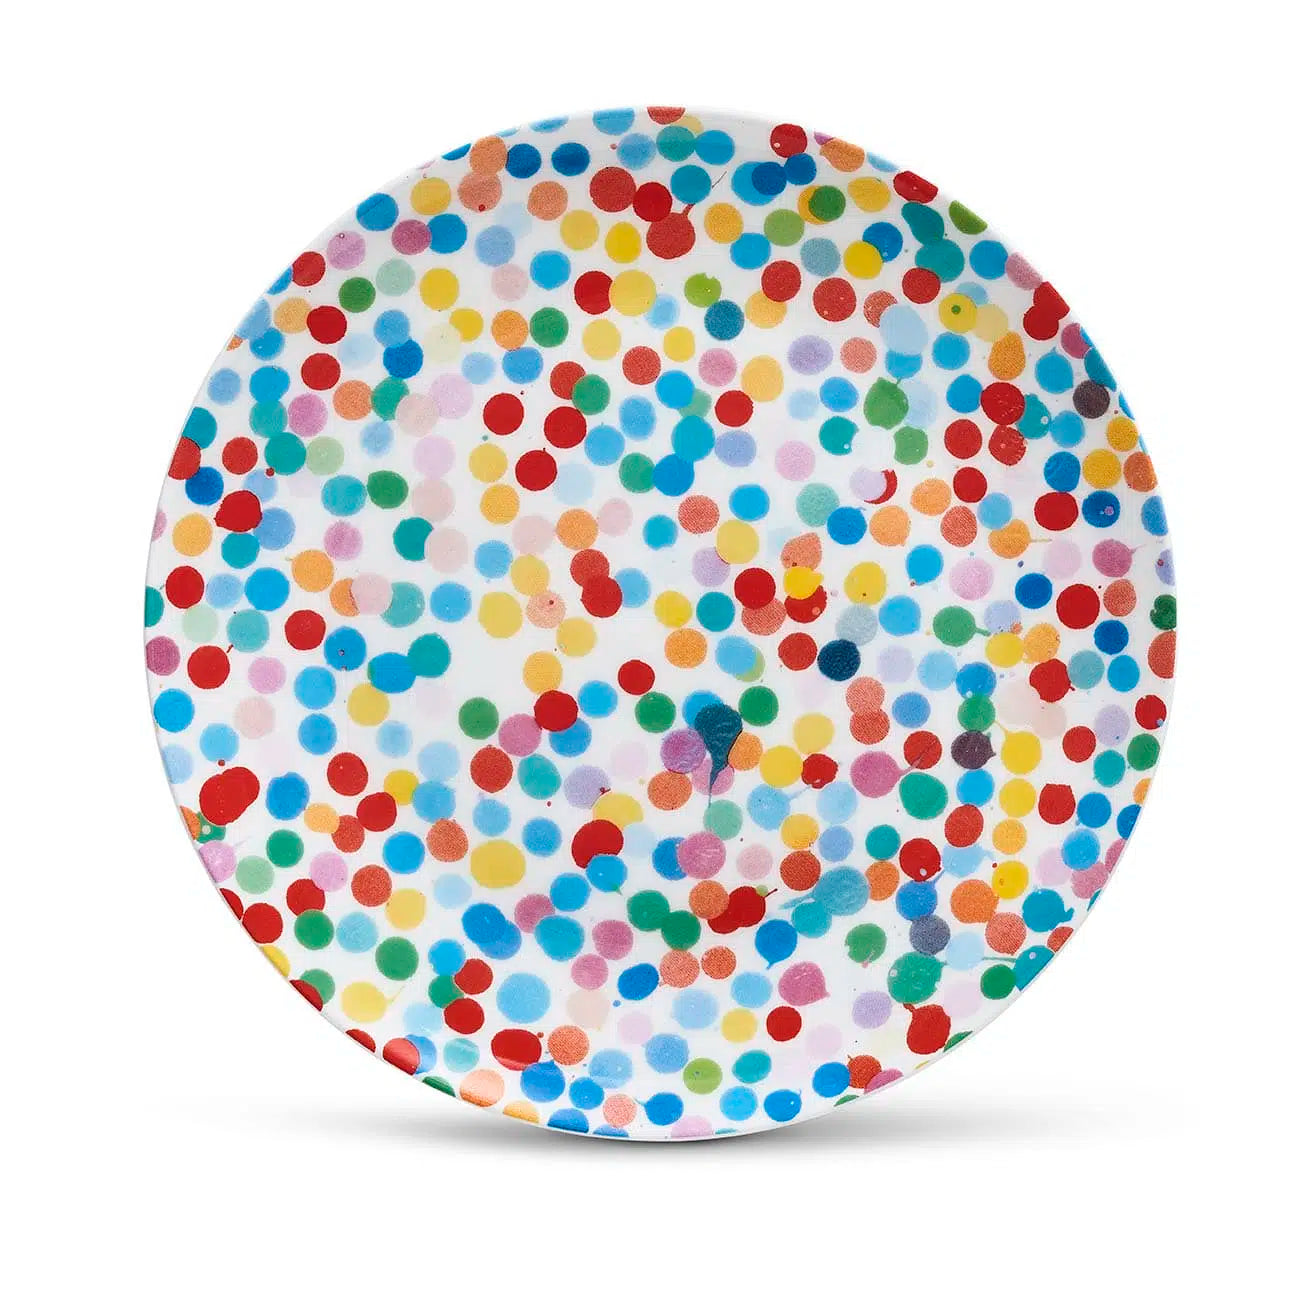 Damien Hirst - Plato All Over Dot (mediano) - Diseño de punto de moneda serigrafiado